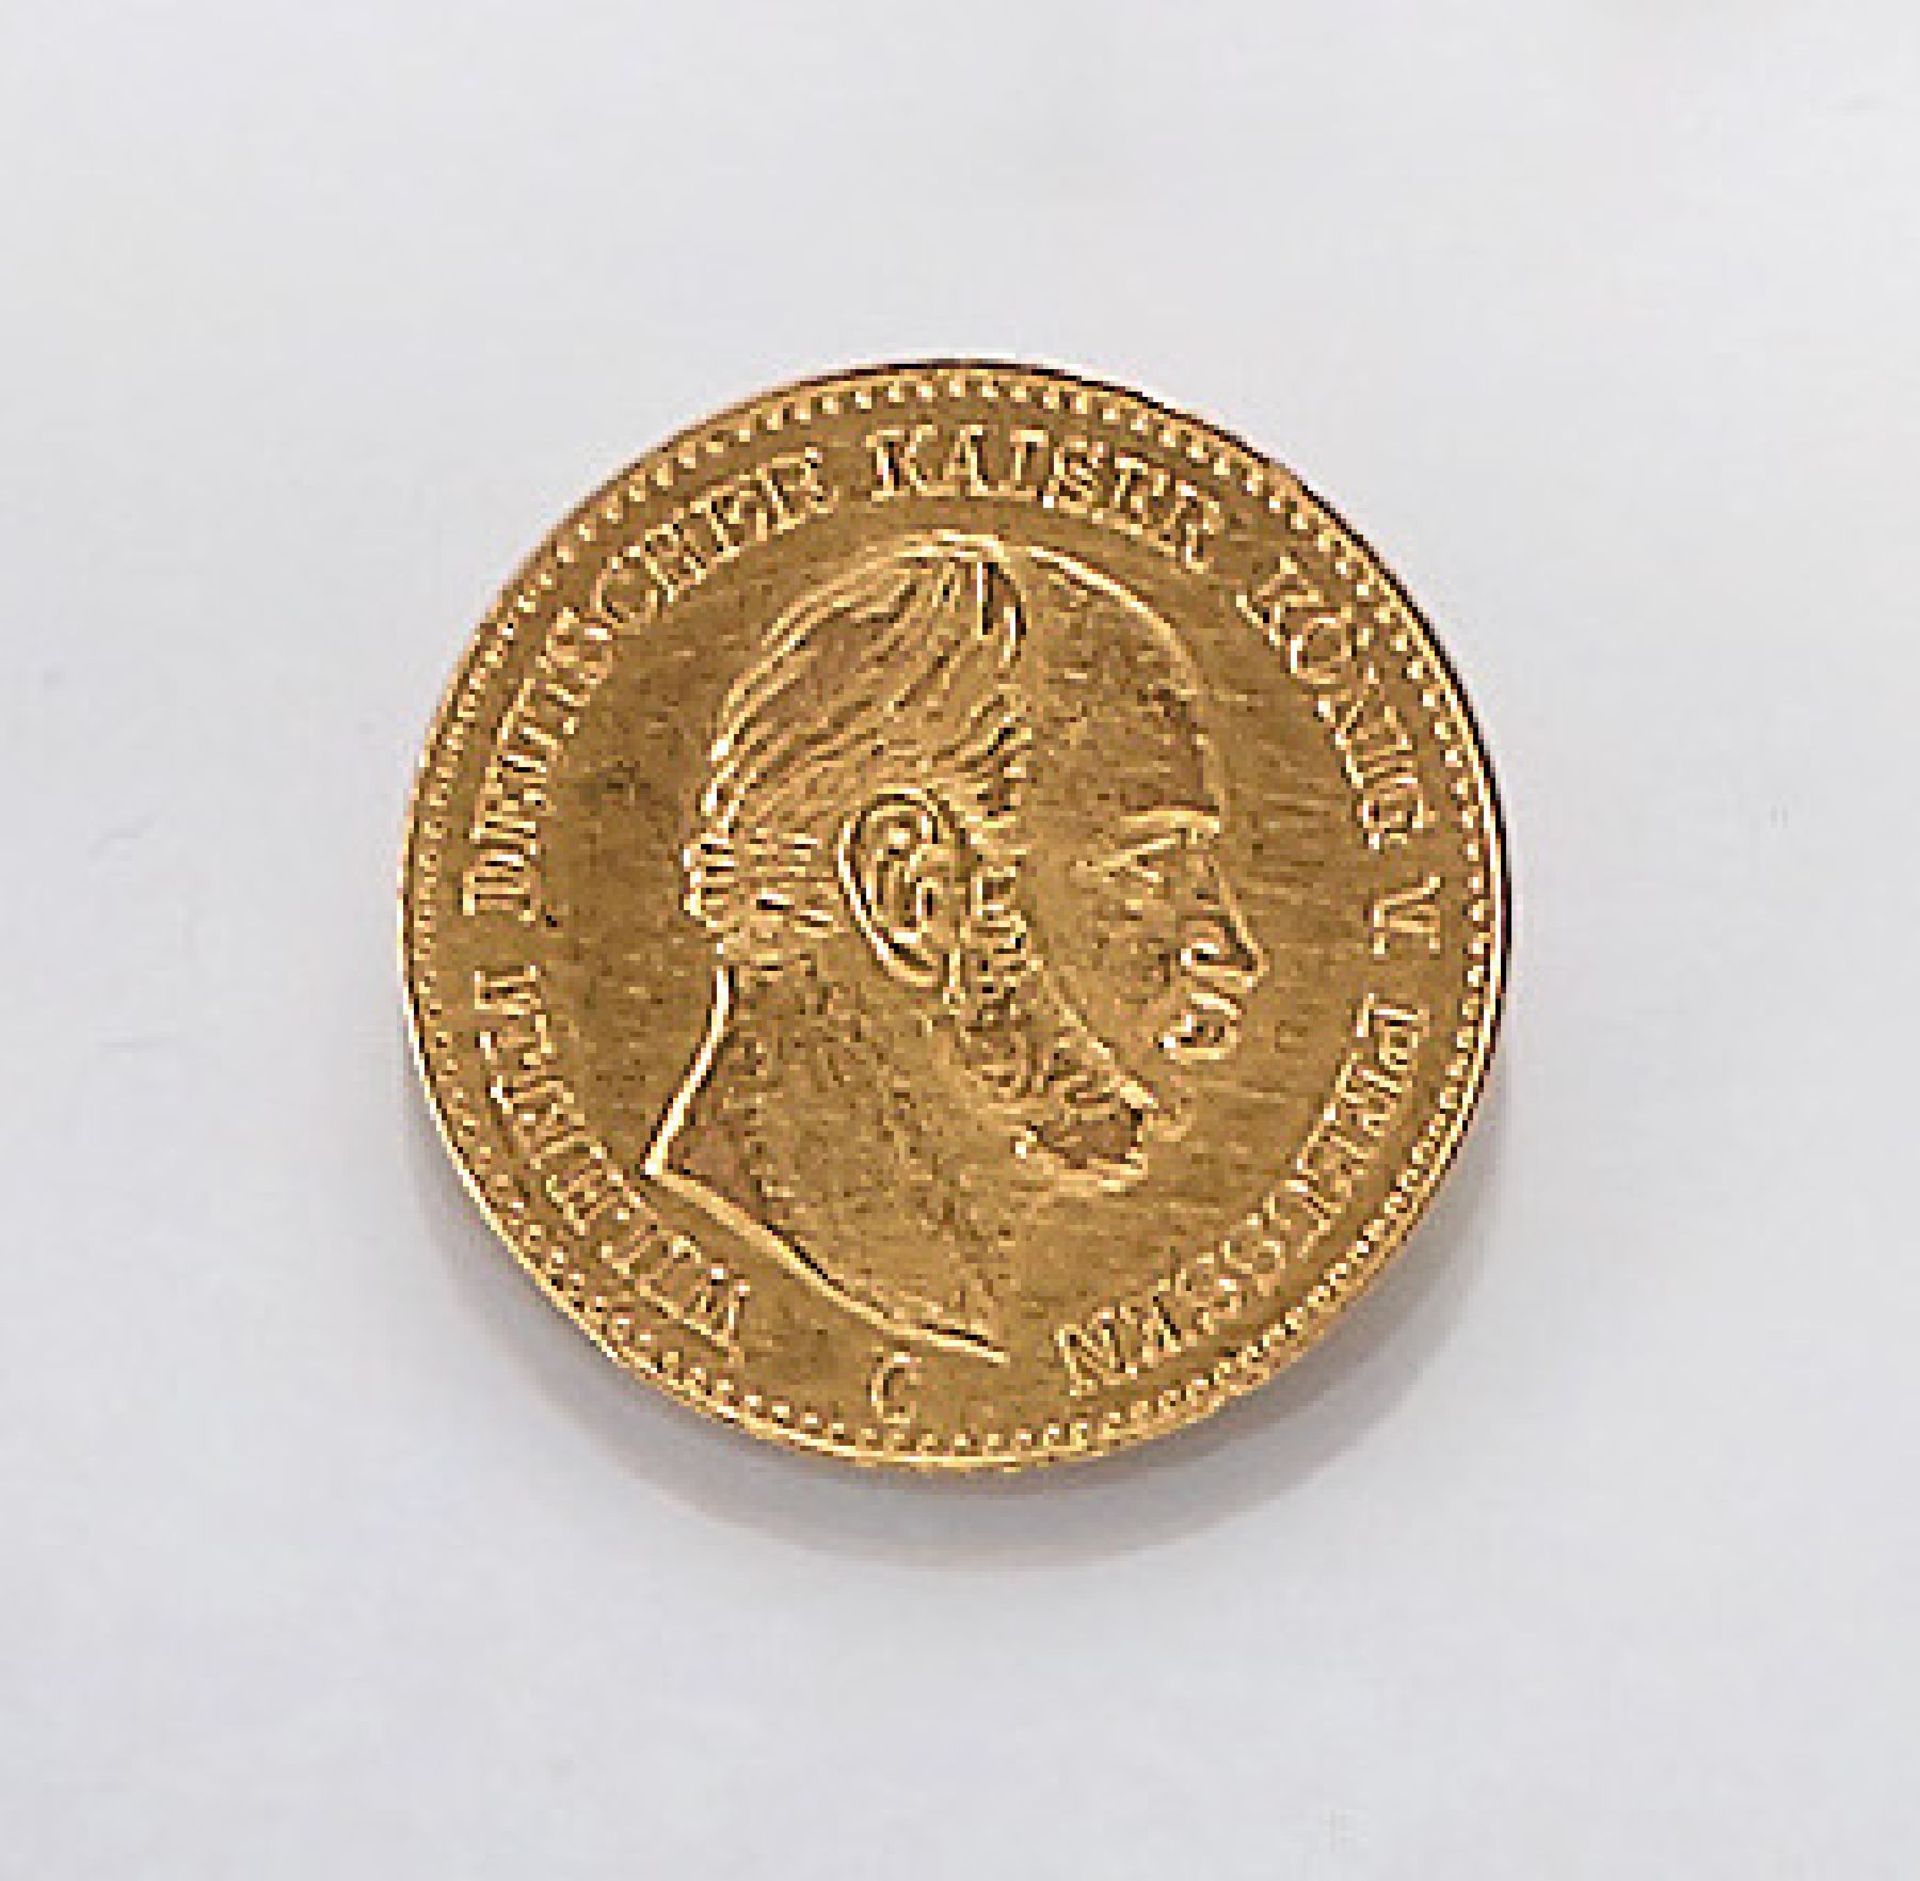 Goldmünze, 5 Mark, Deutsches Reich, 1877, Wilhelm, Deutscher Kaiser, König von Preussen,Prägeort